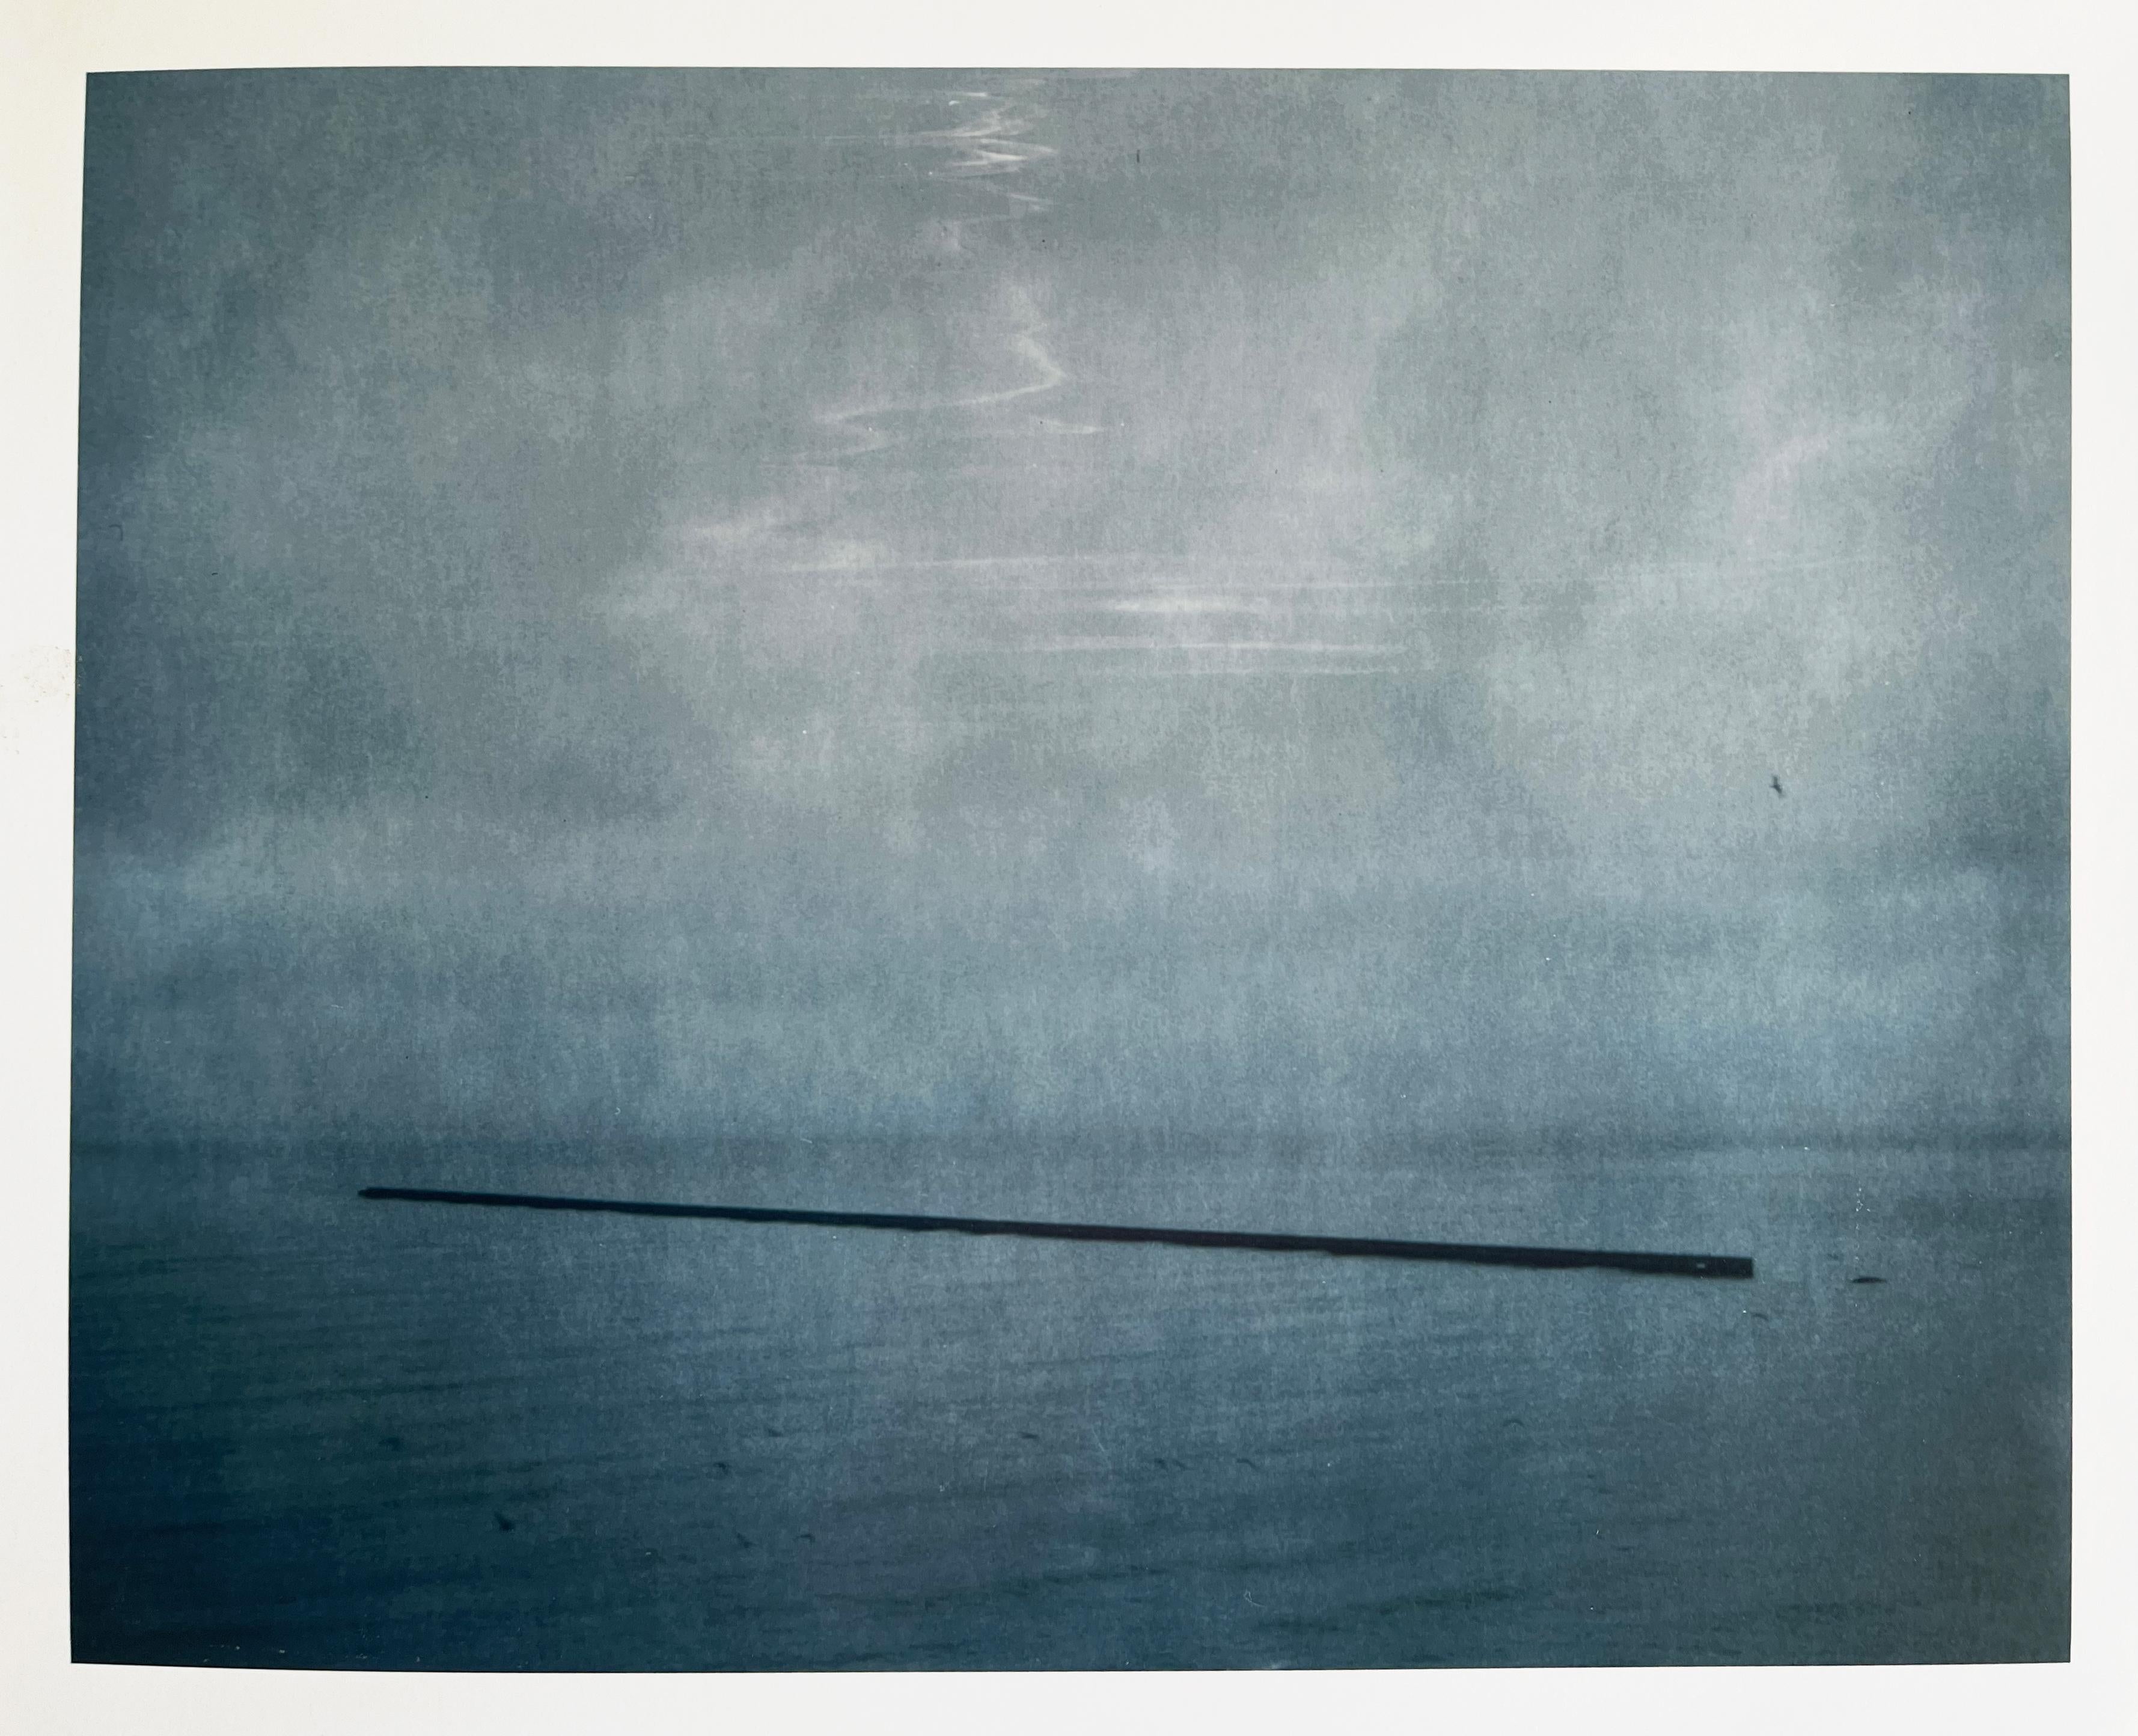 Pier - Contemporary, Farbe, Fotografie, Polaroid – Photograph von Kirsten Thys van den Audenaerde